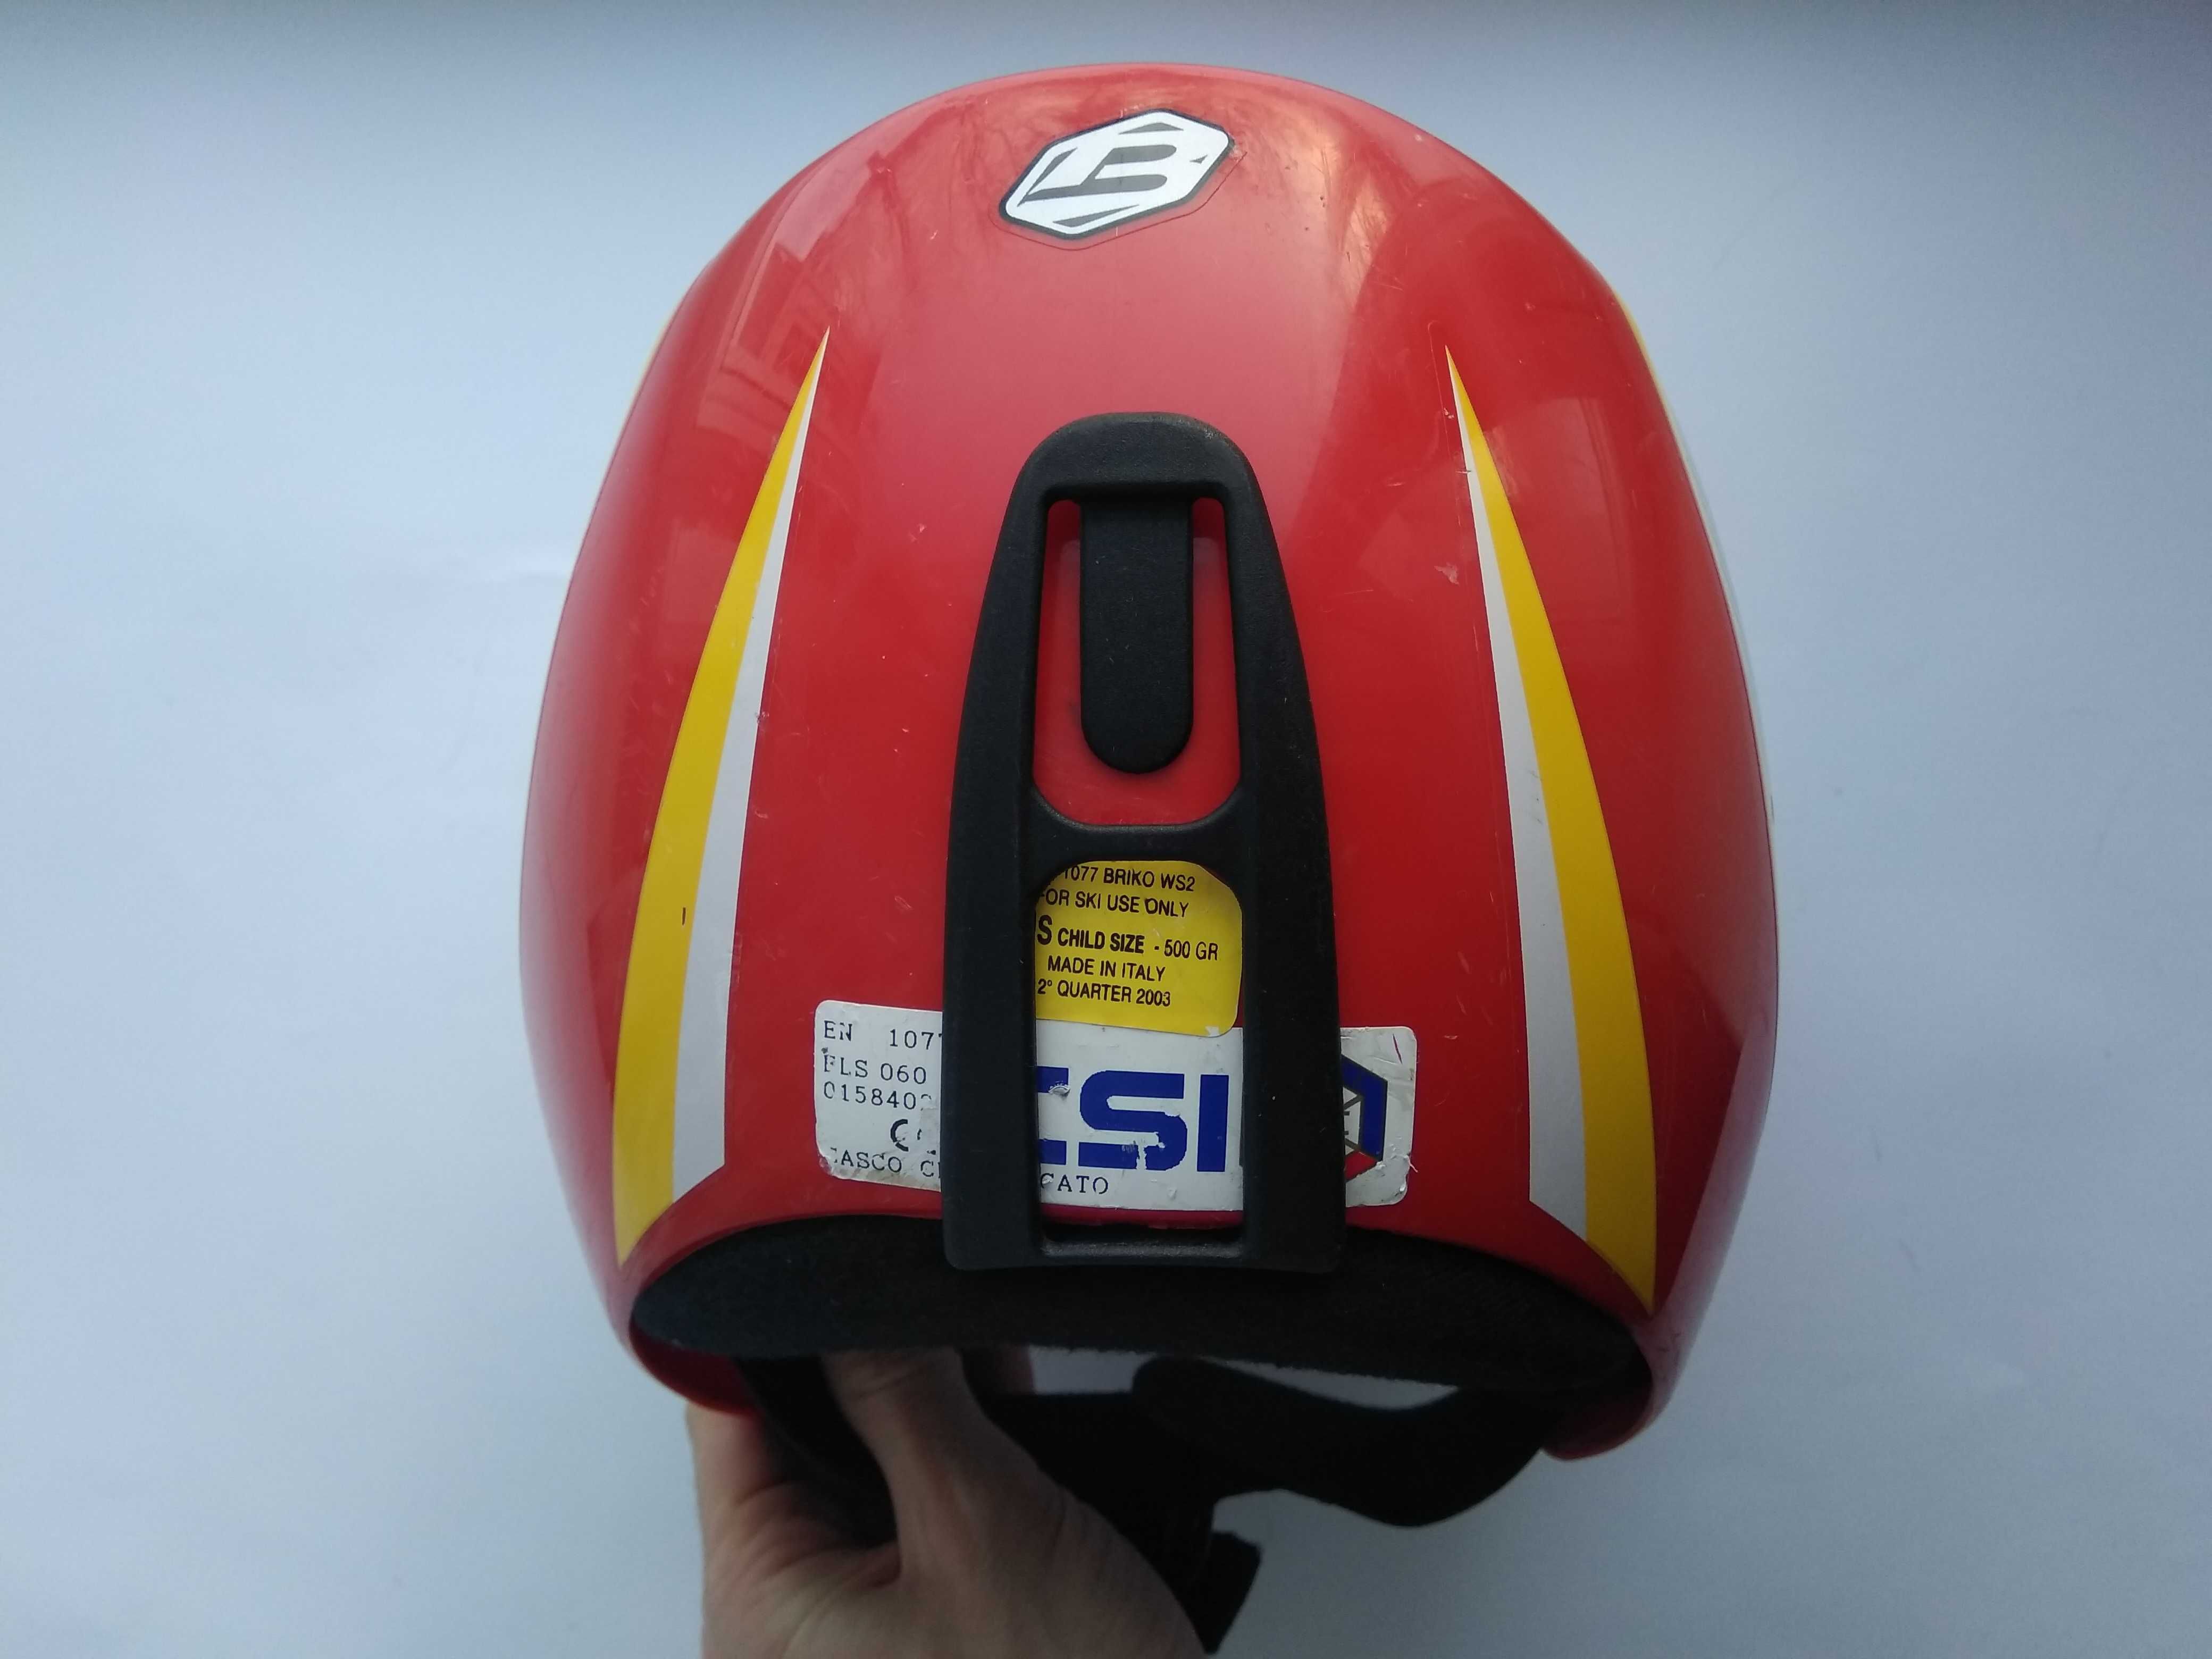 Горнолыжный сноубордический шлем Briko WS2, размер 54см, Италия